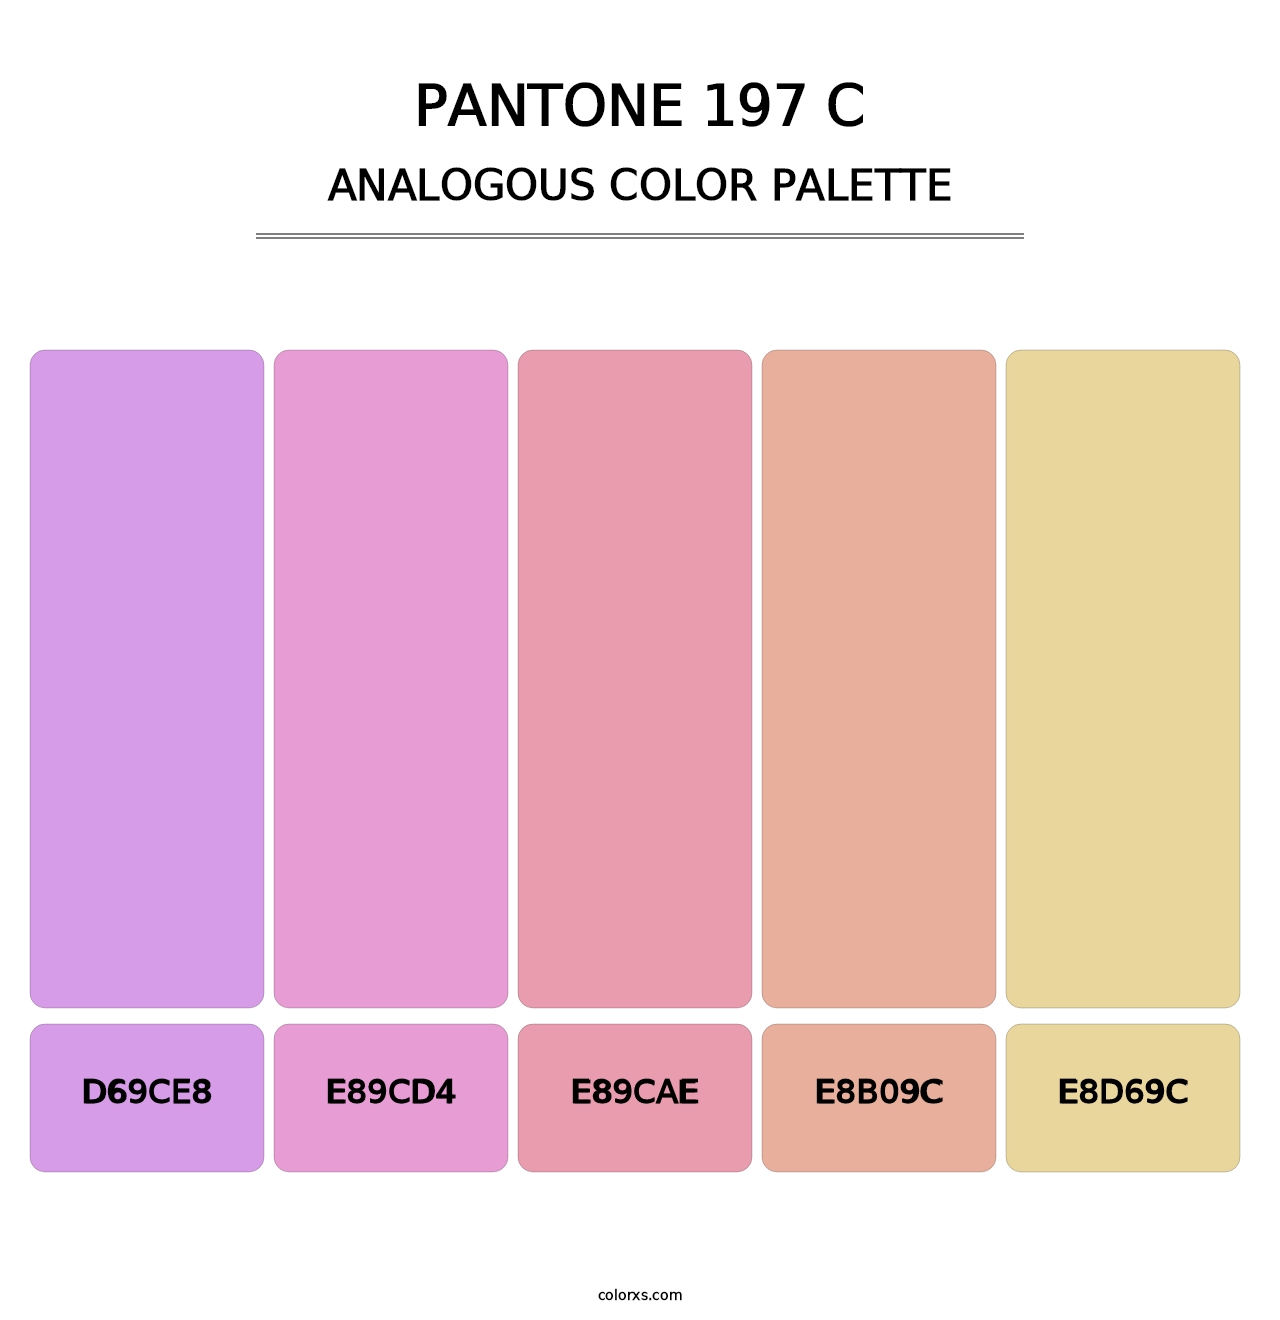 PANTONE 197 C - Analogous Color Palette